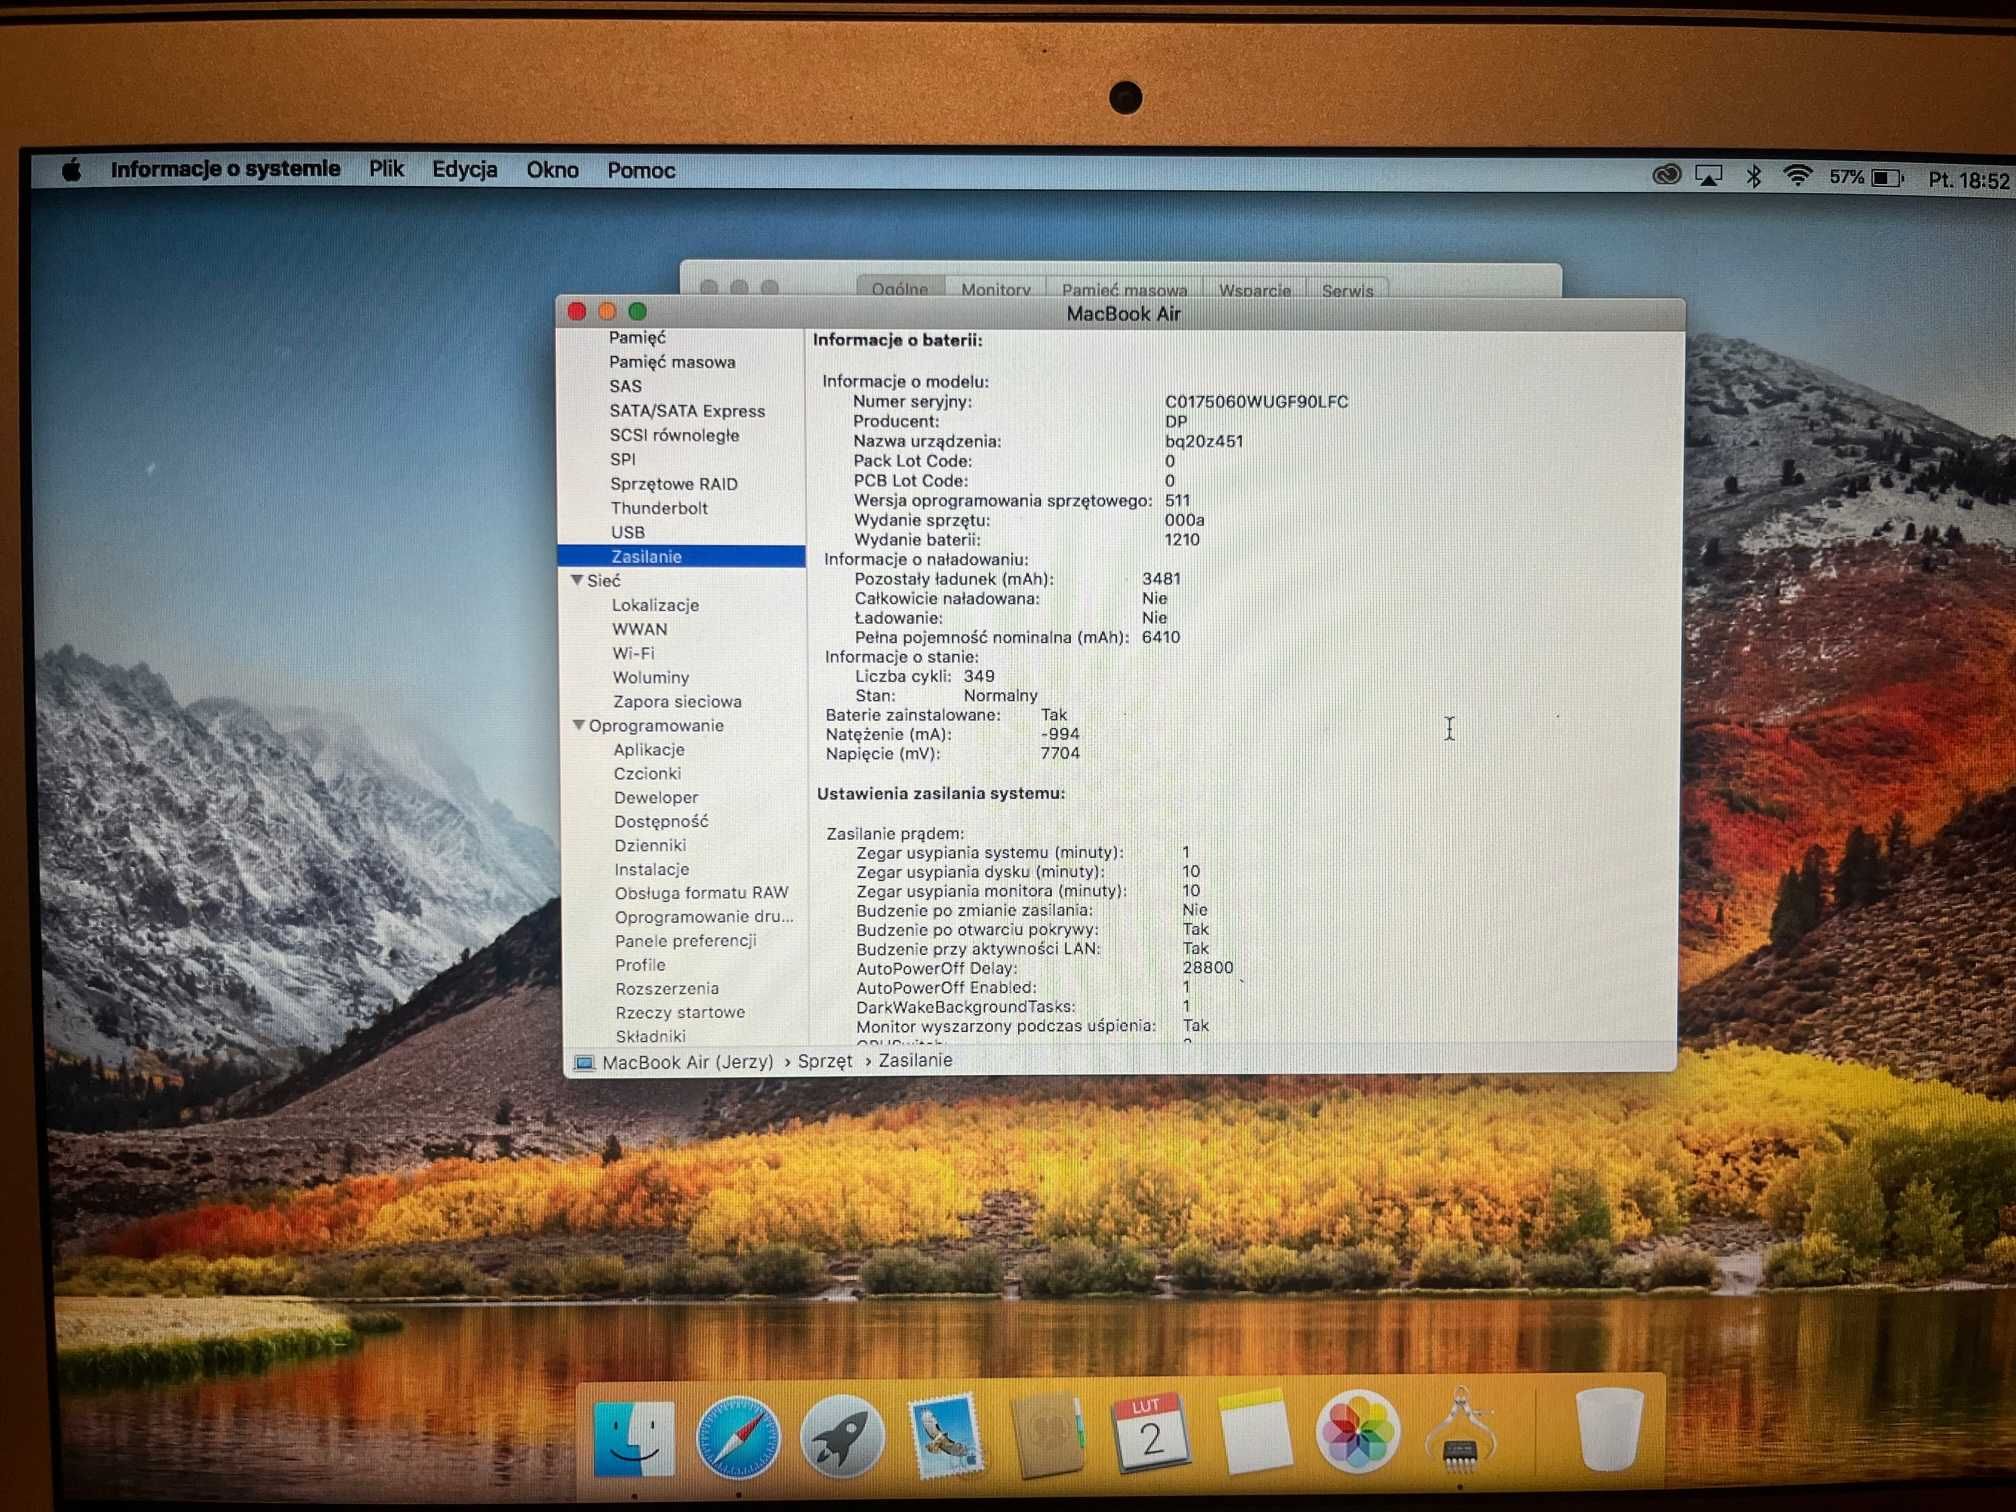 MacBook Air 2017, 13", 1,8 GHz Core i5, 8GB